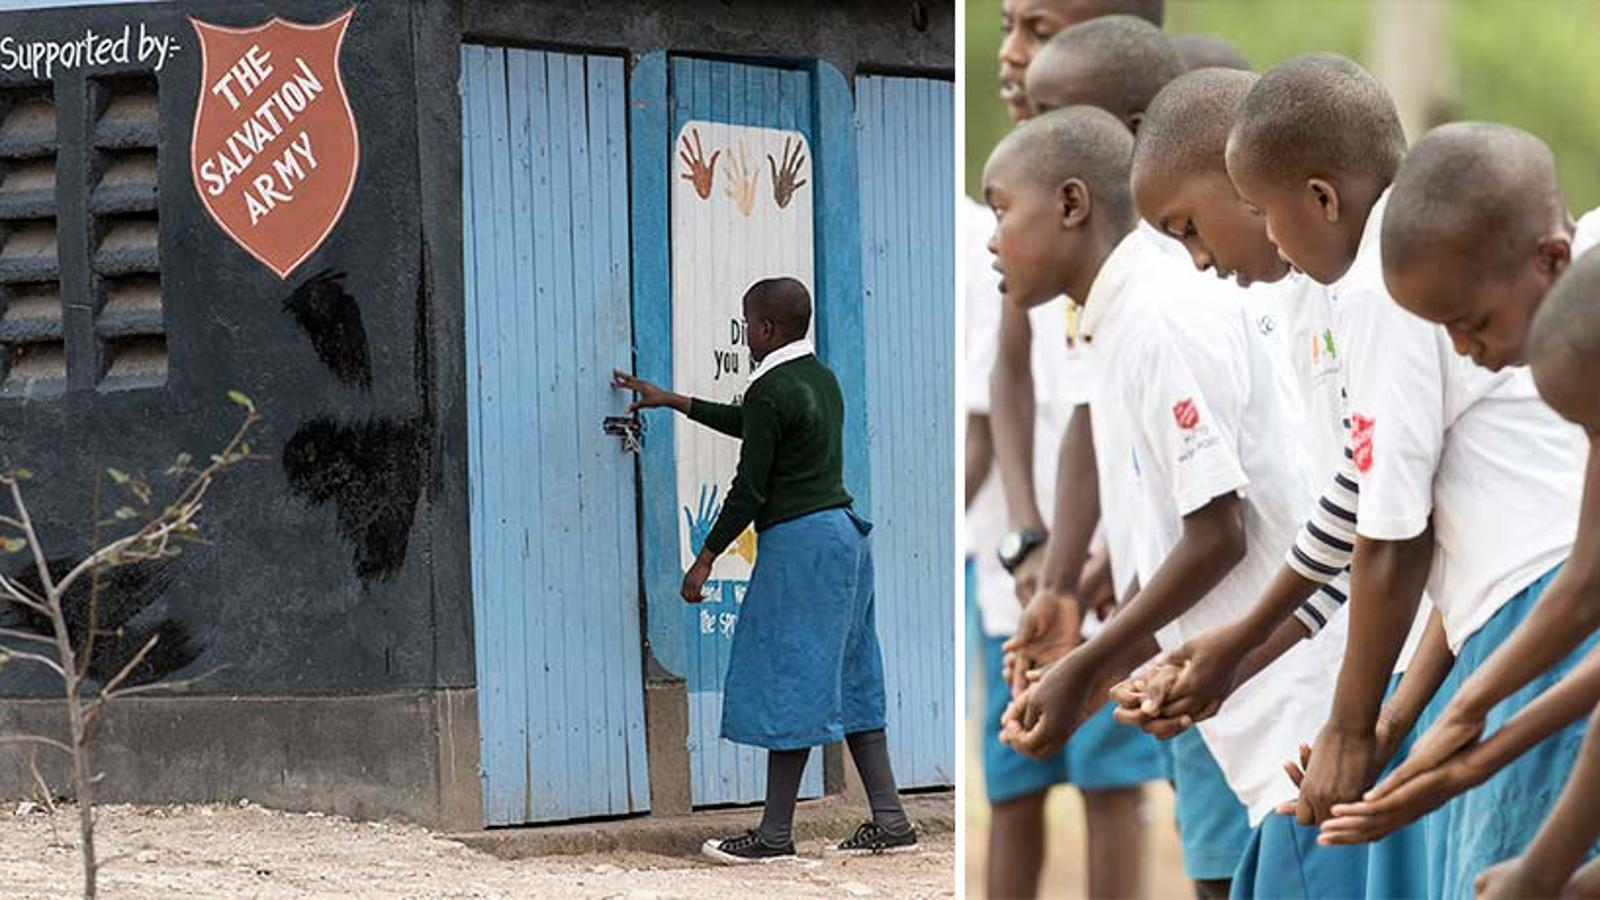 Till vänster: Ryggtavlan på en flicka i skoluniform som står vid dörren till en skola. På skolan står det "Supported by The Salvation Army. Till höger: Ett gäng pojkar i skoluniformer som tvättar sina händer.